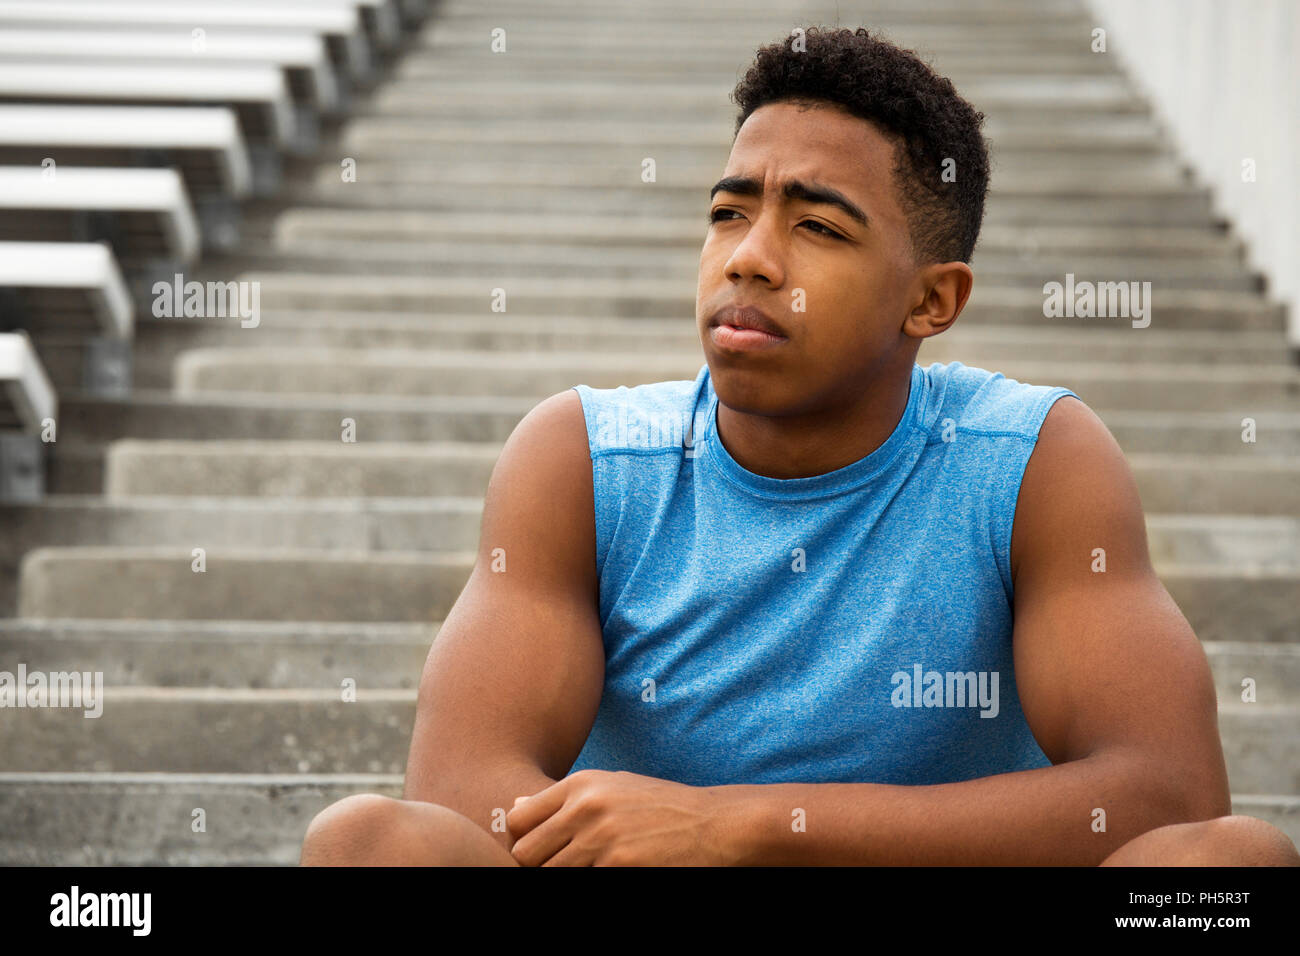 Junge afrikanische Amerian jugendlicher Sportler denken über seine Zukunft. Stockfoto